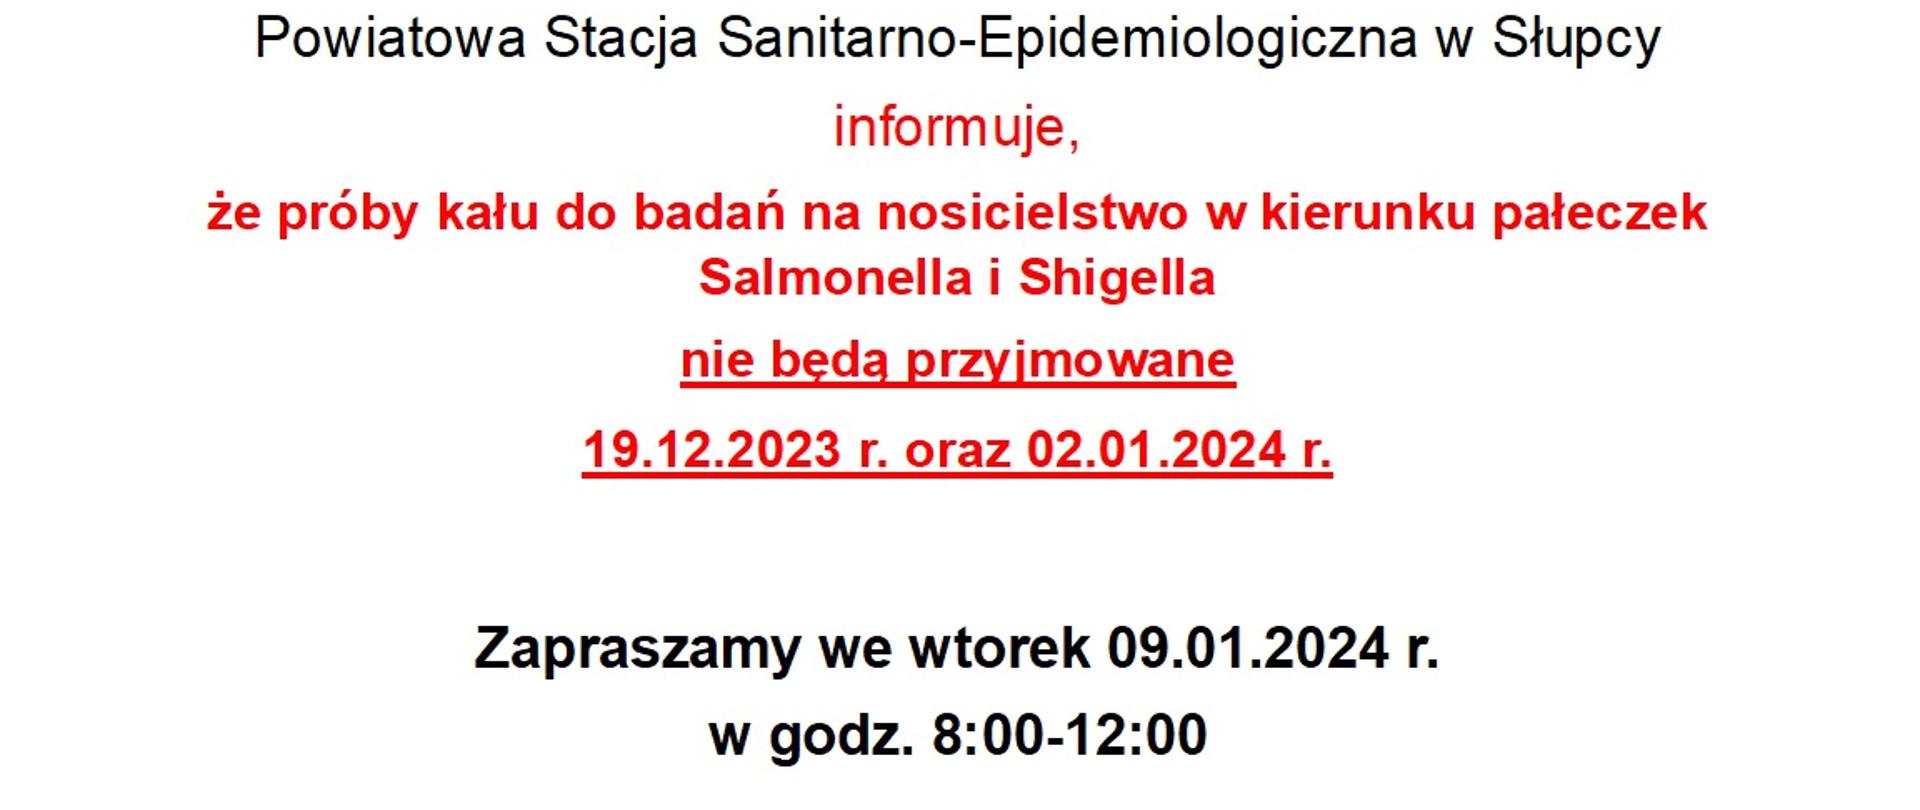 informacja słowna: uwaga Powiatowa Stacja Sanitarno - Epidemiologiczna w Słupcy informuje, że próby kału do badań na nosicielstwo w kierunku pałeczek Salmonella i Shigiella nie będą przyjmowane 19.12.2023 r. oraz 02.01.2024 r. Zapraszamy we wtorek 09.01.2024 r. w godz. 8.00-12.00